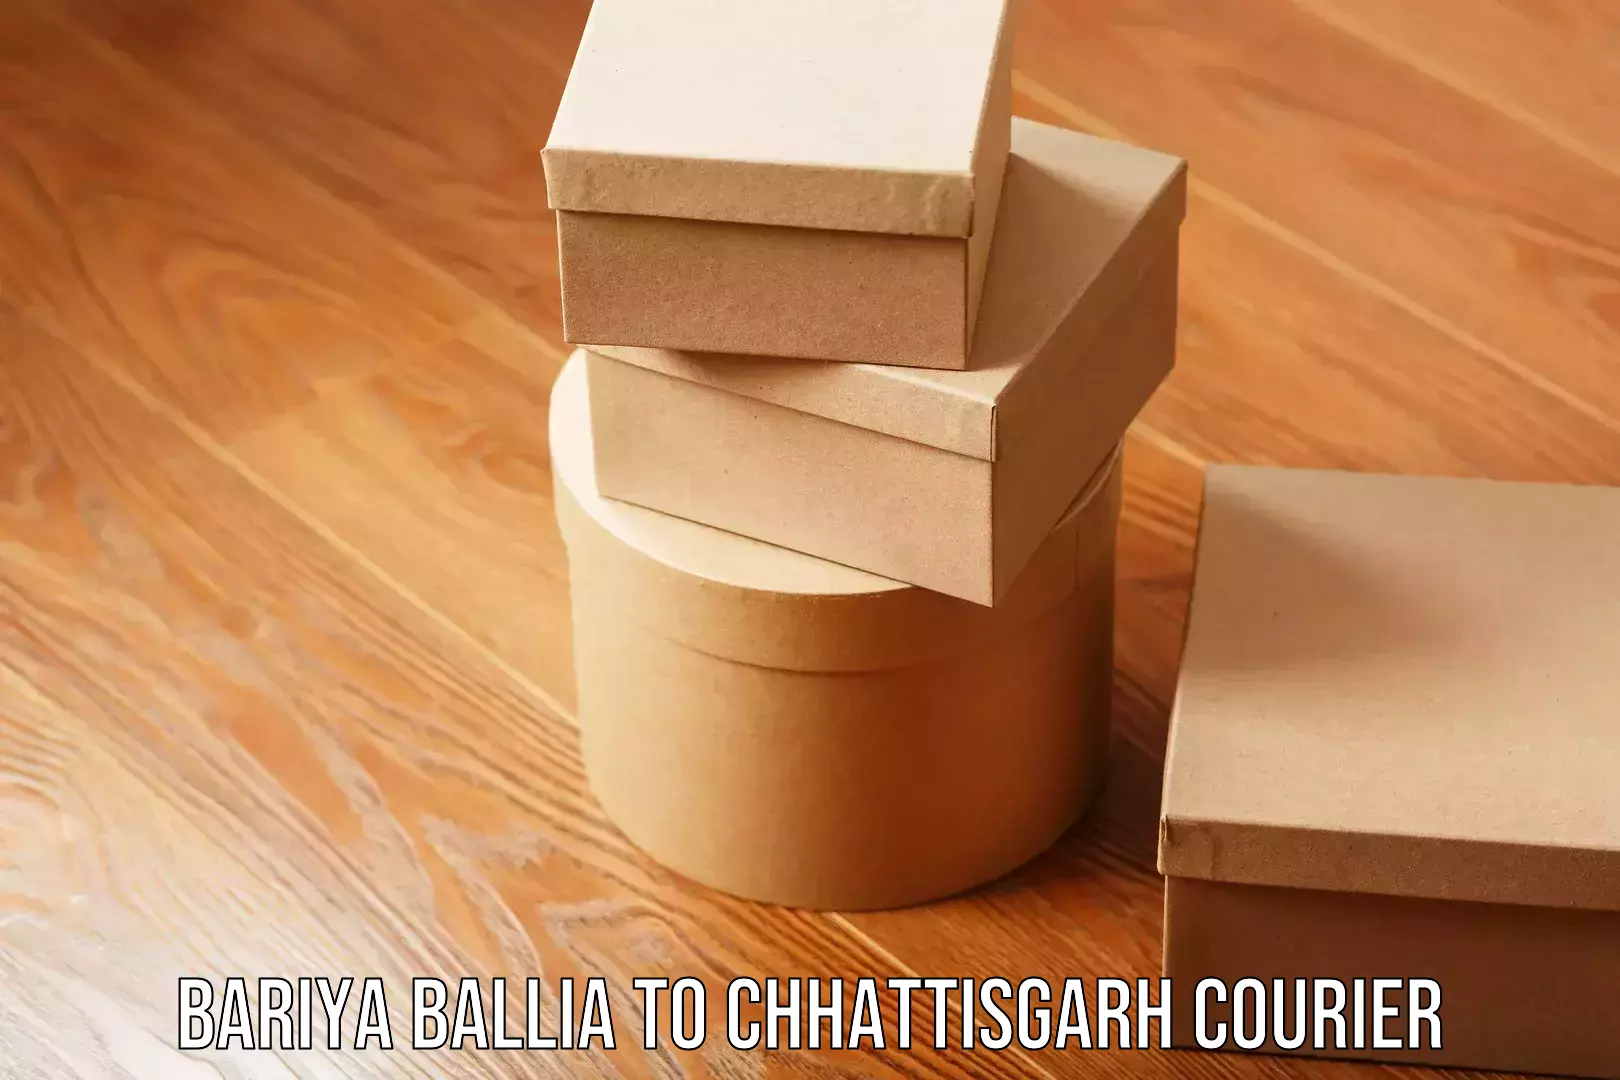 Express courier facilities Bariya Ballia to Chhattisgarh